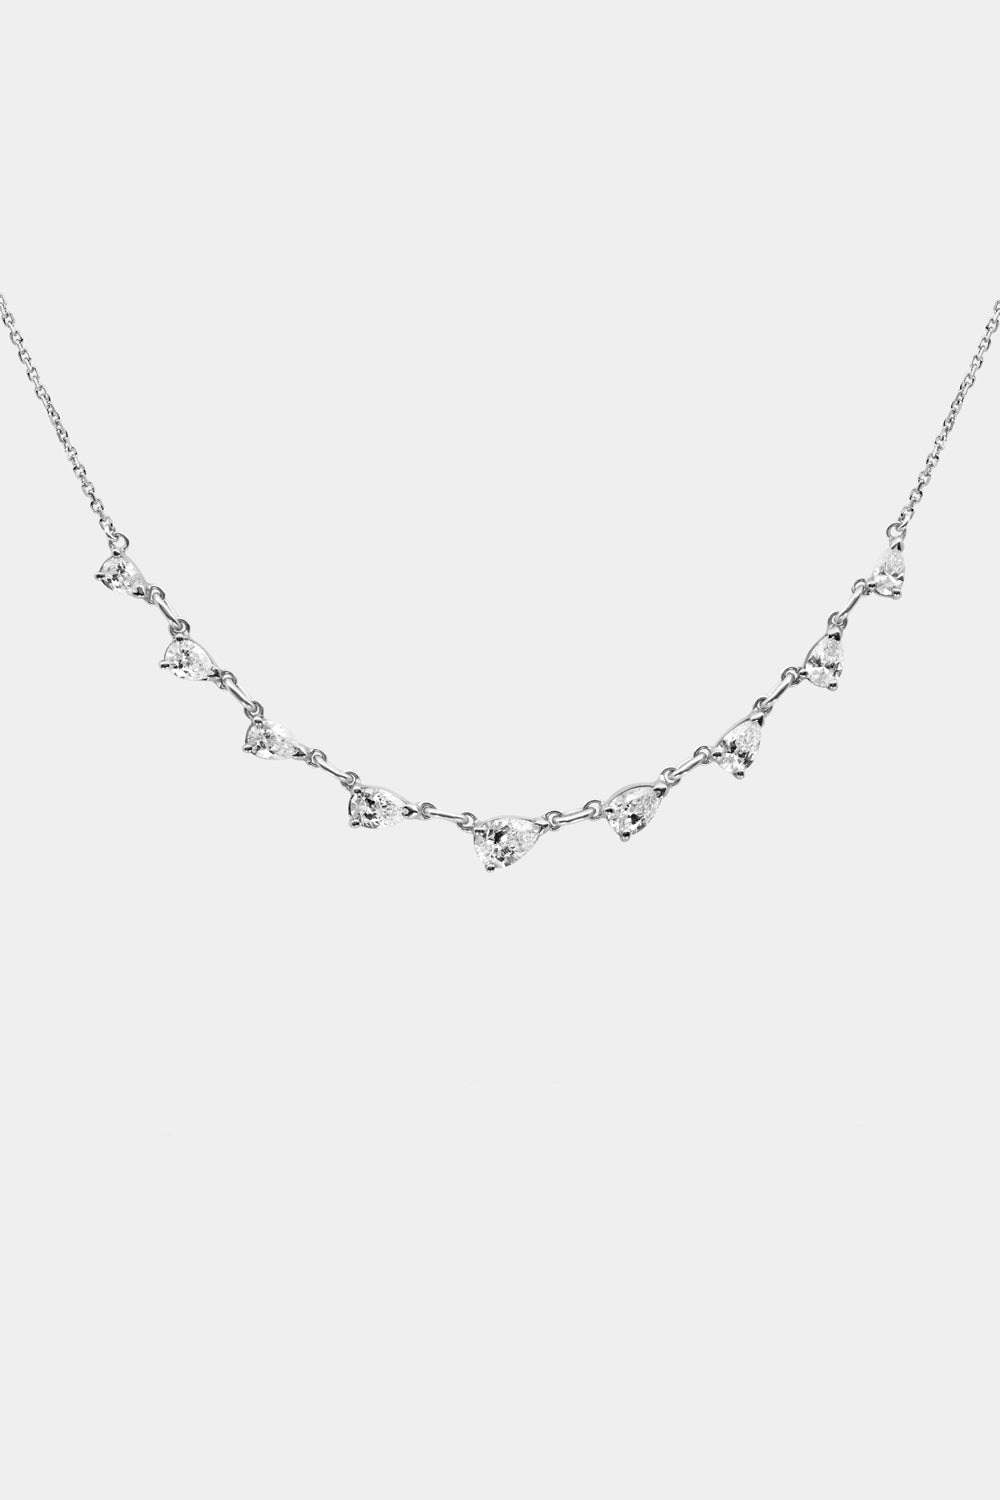 Arwen Pear Diamond Necklace | 18K Yellow Gold| Natasha Schweitzer